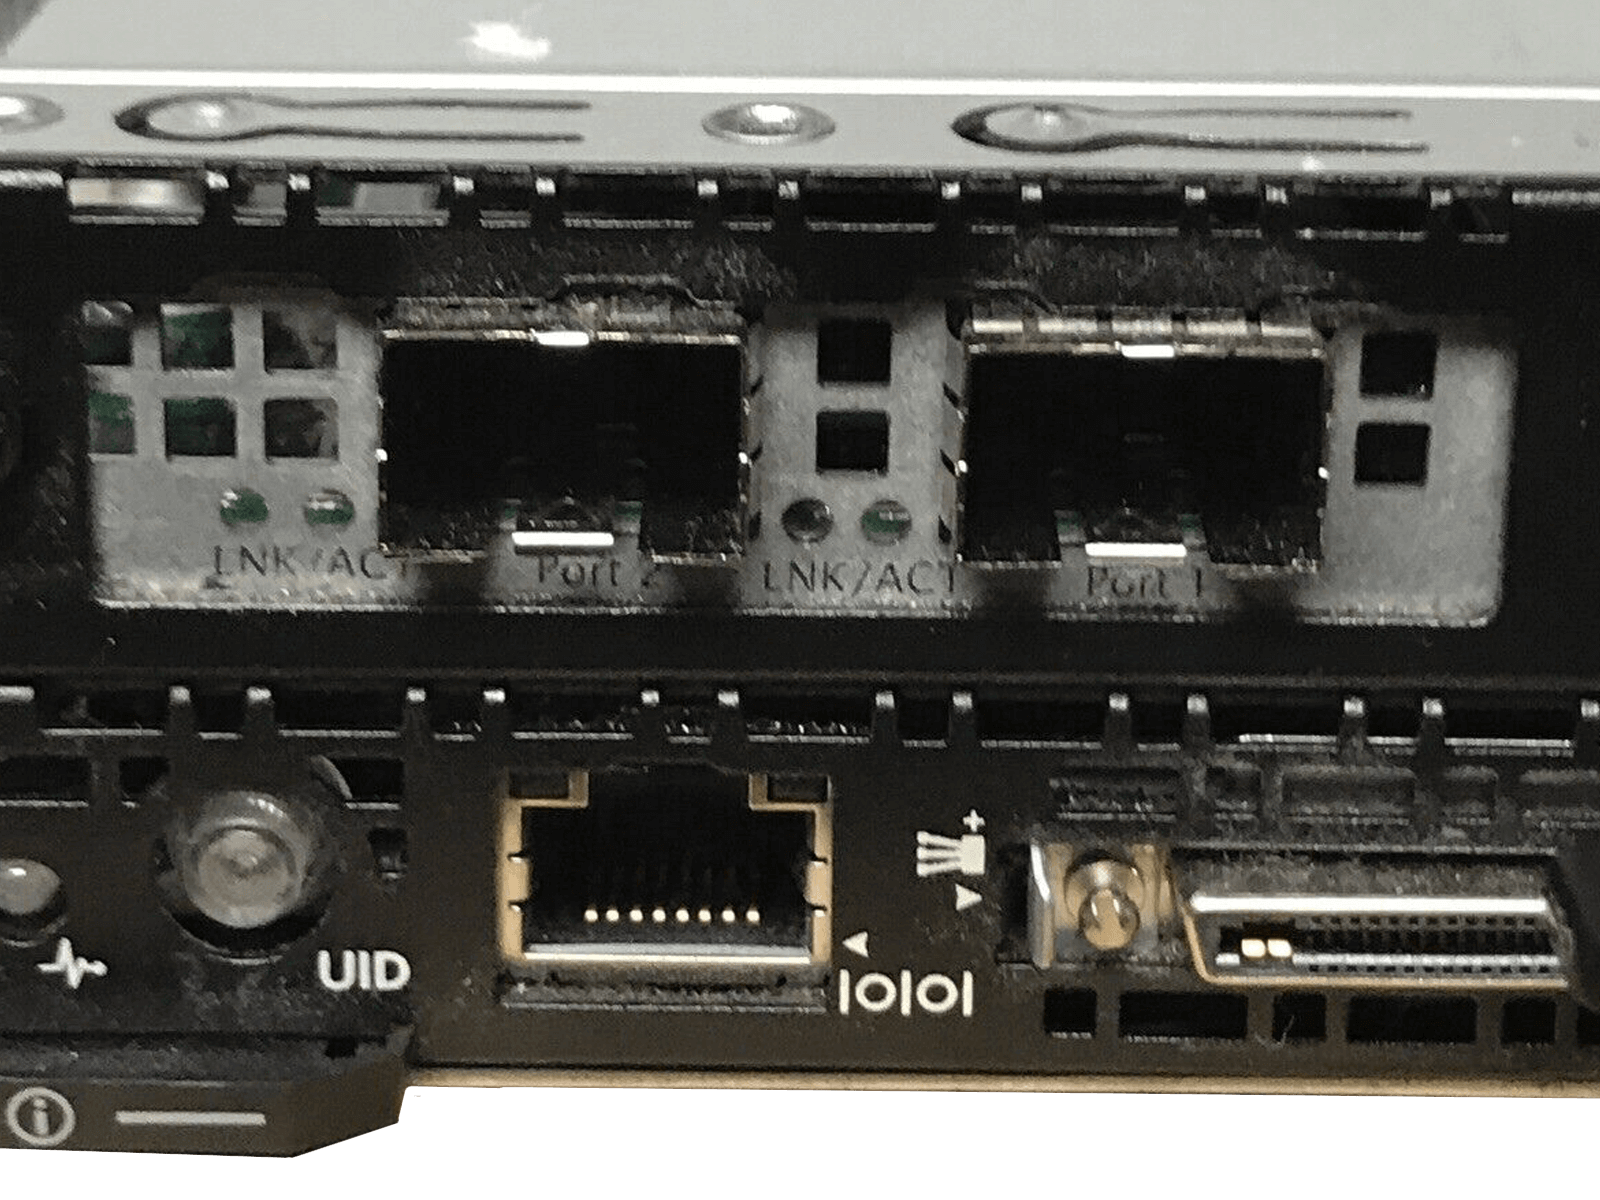 HP ProLiant S6500 8x SL230s 16x E5-2650V2 1024GB 16x Intel 200GB SSD Rails.